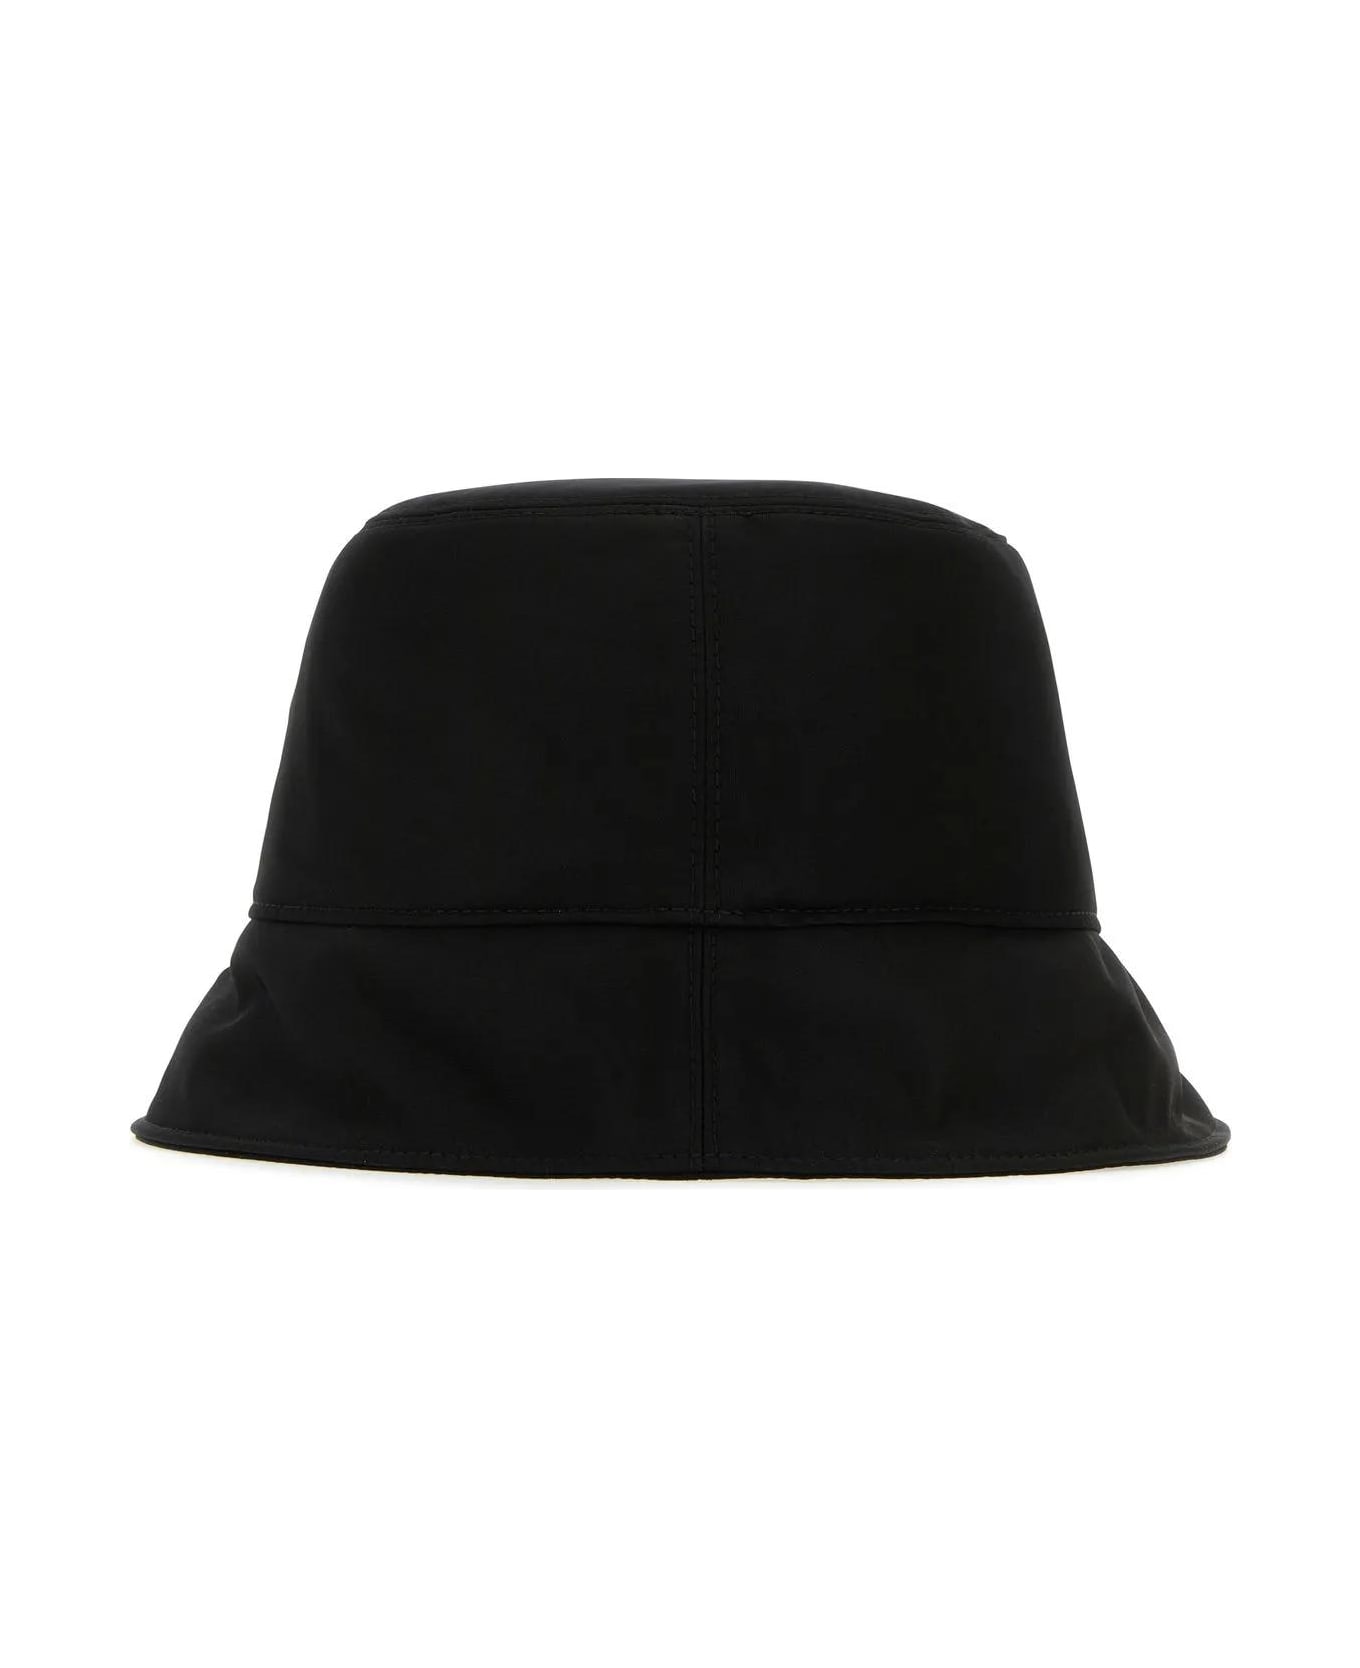 Off-White Bucket Hat - White/Black